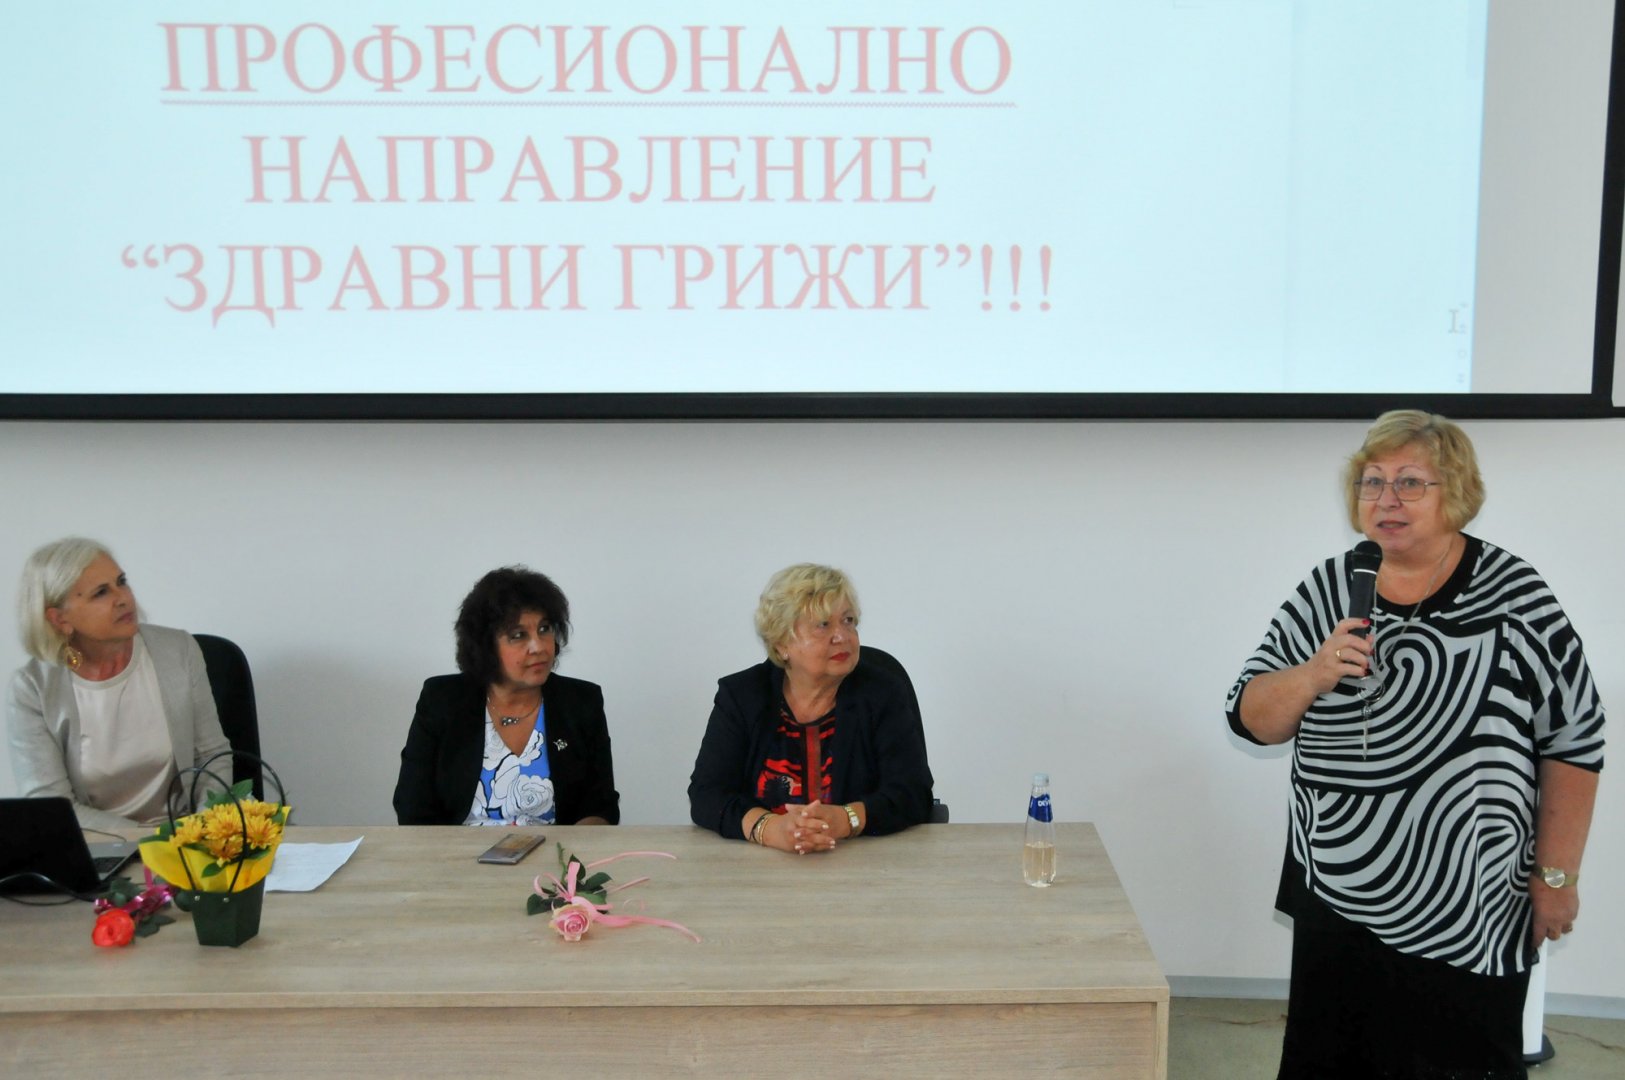 Ректорът на университета проф. Магдалена Миткова (вдясно) поздрави студентите и техните преподаватели. Снимки Черноморие-бг